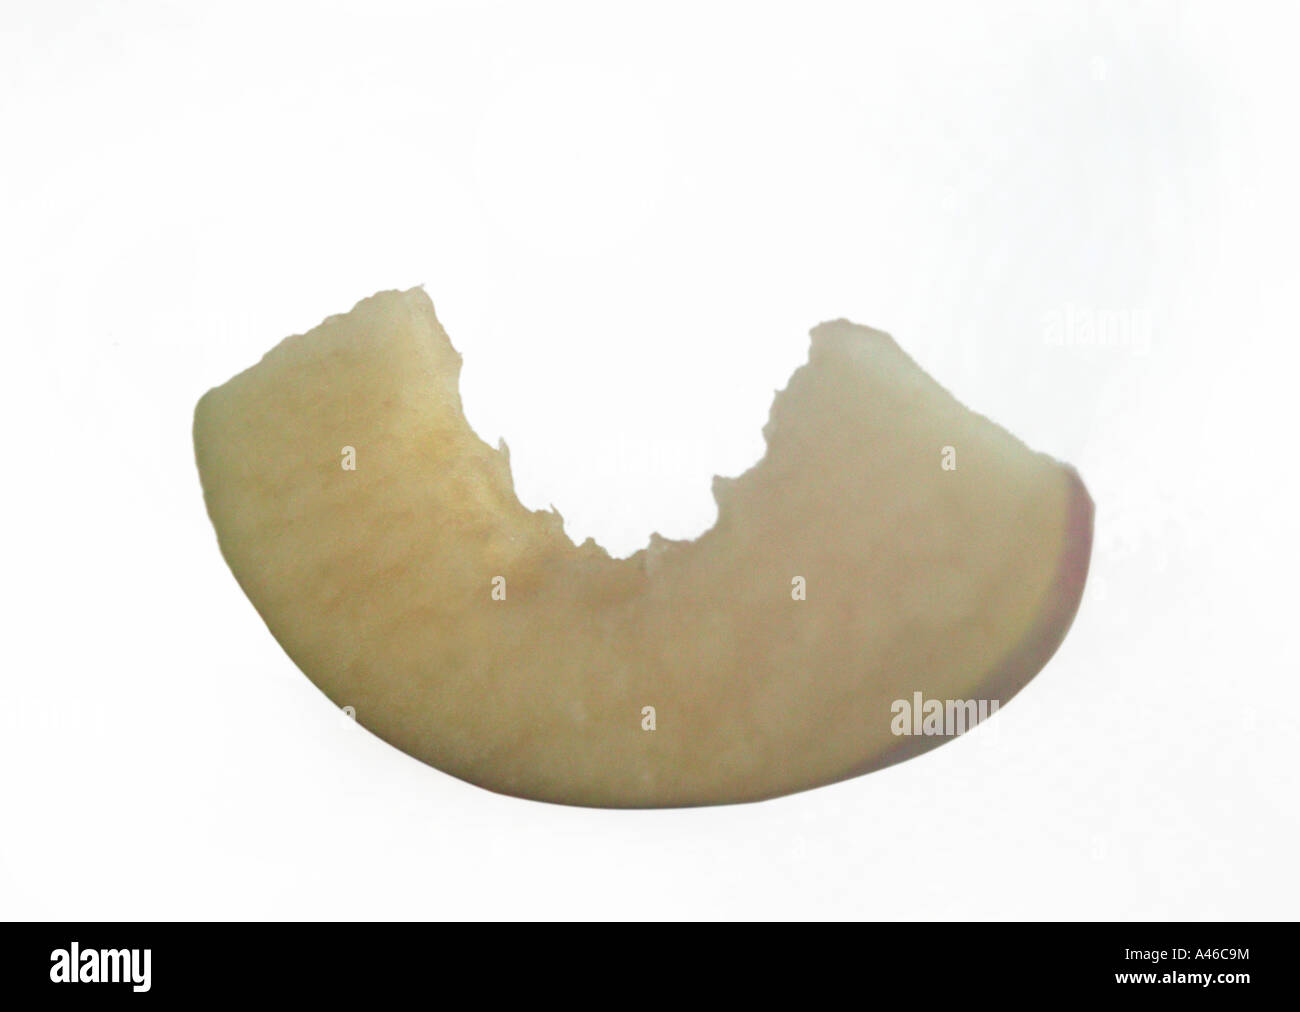 Scheibe der Apfelfrucht auf weißer Hintergrund mit Zähnen oder beißen Mark in Fleisch Konzepte für eine gesunde Ernährung Stockfoto